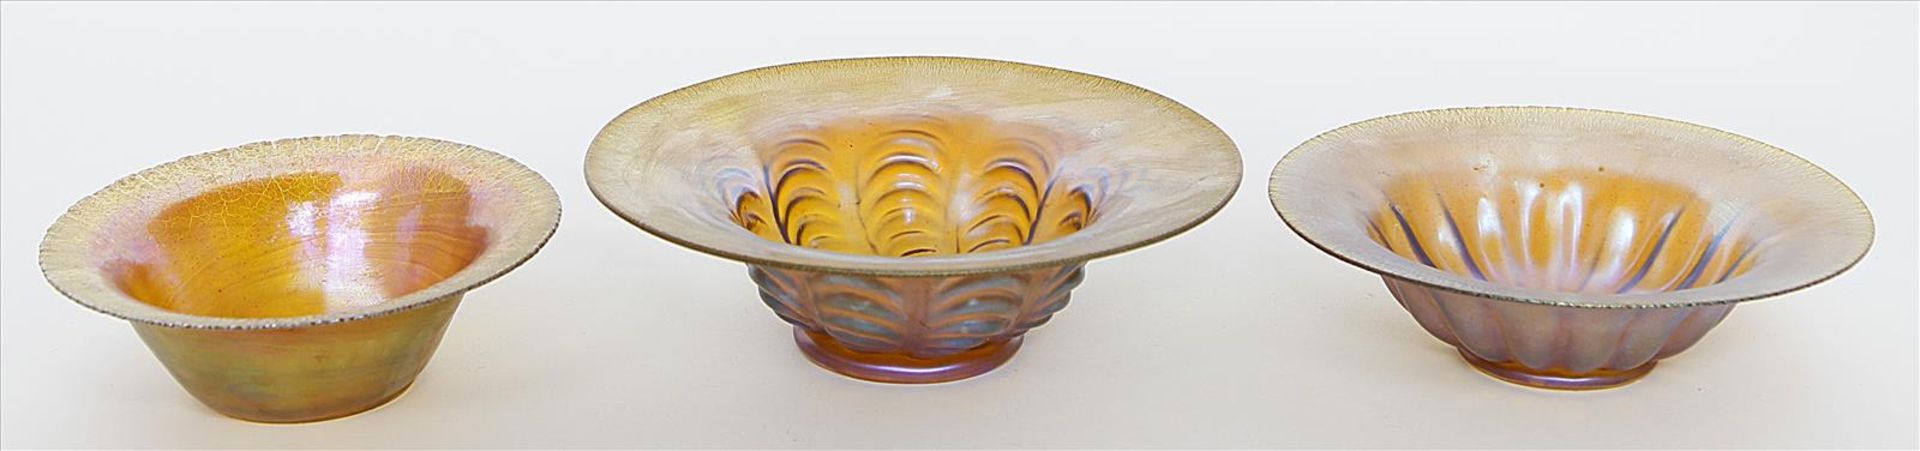 Drei Schalen.Bernsteinfarbenes Glas, golden bis violett irisierend, so genanntes "Myra-Kristall".